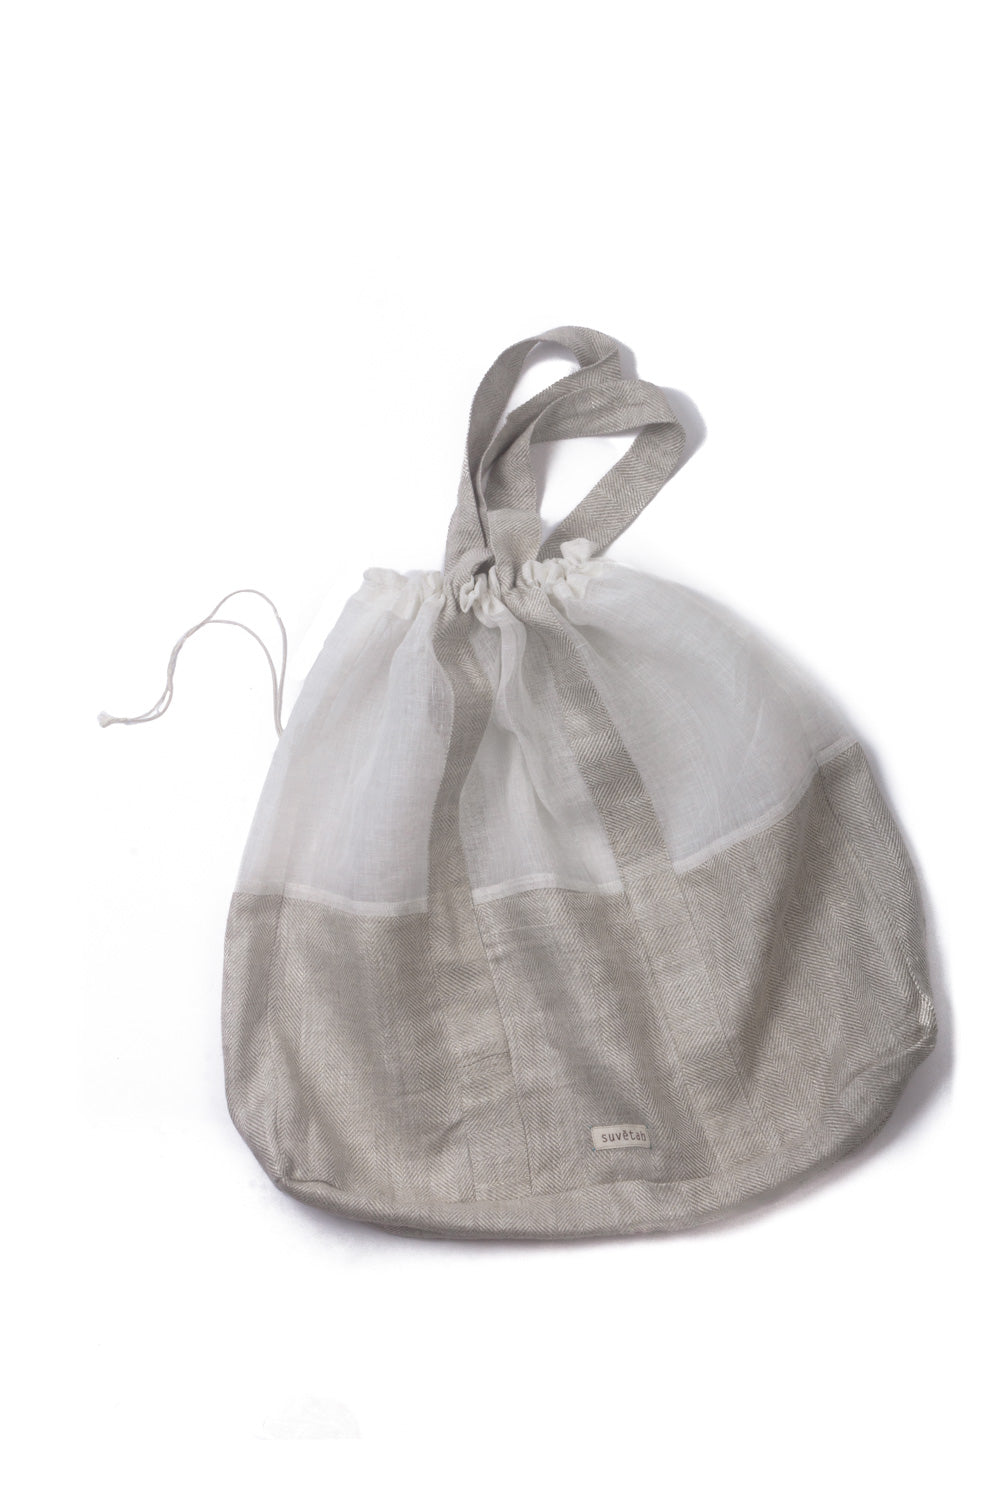 <img src="Linen Bag-1-jpg" alt="Germanium Linen Bag "/>